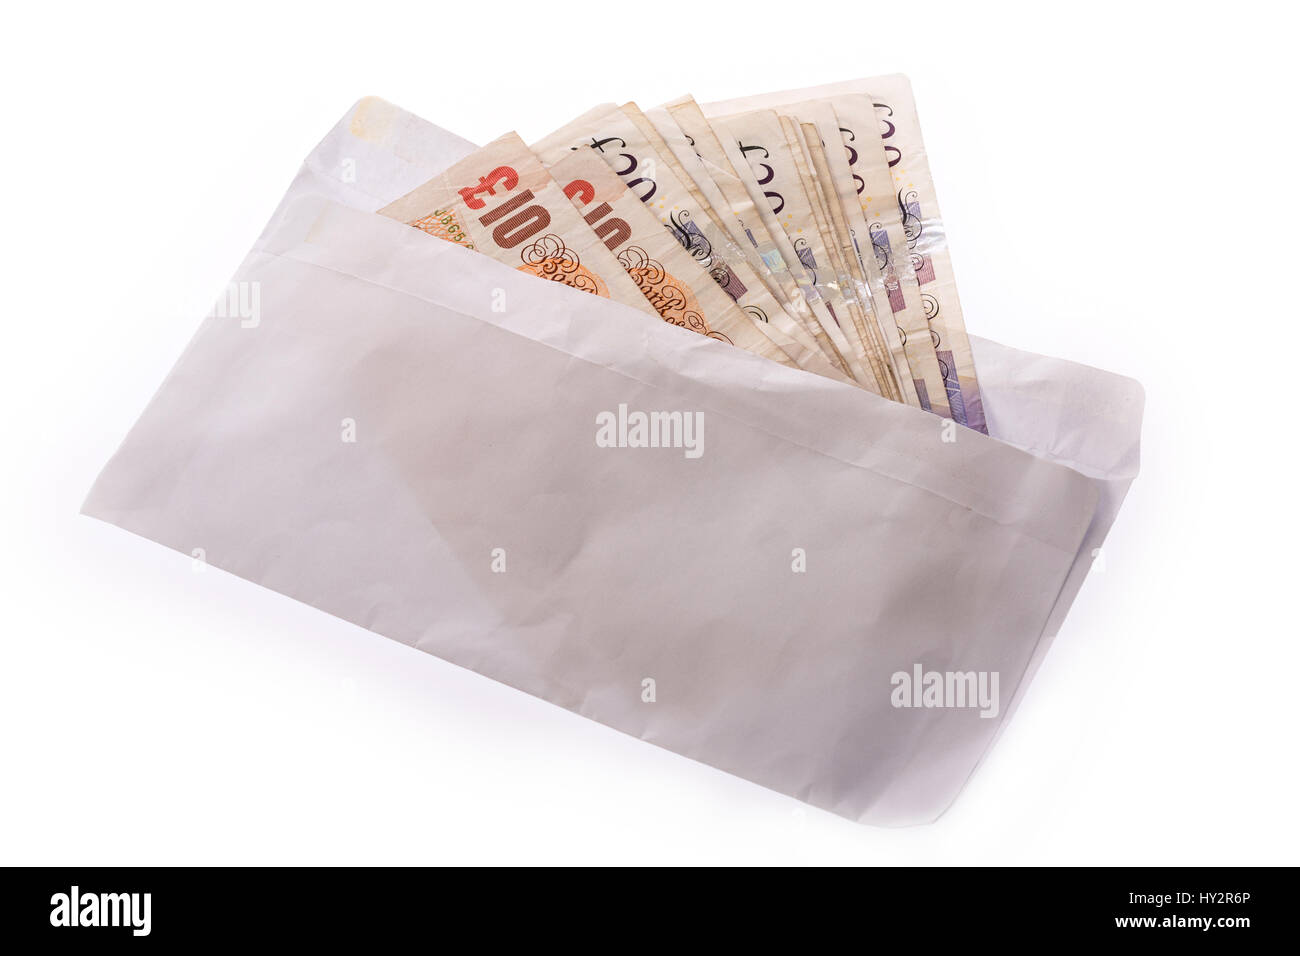 envelope of cash uk pound notes Stock Photo